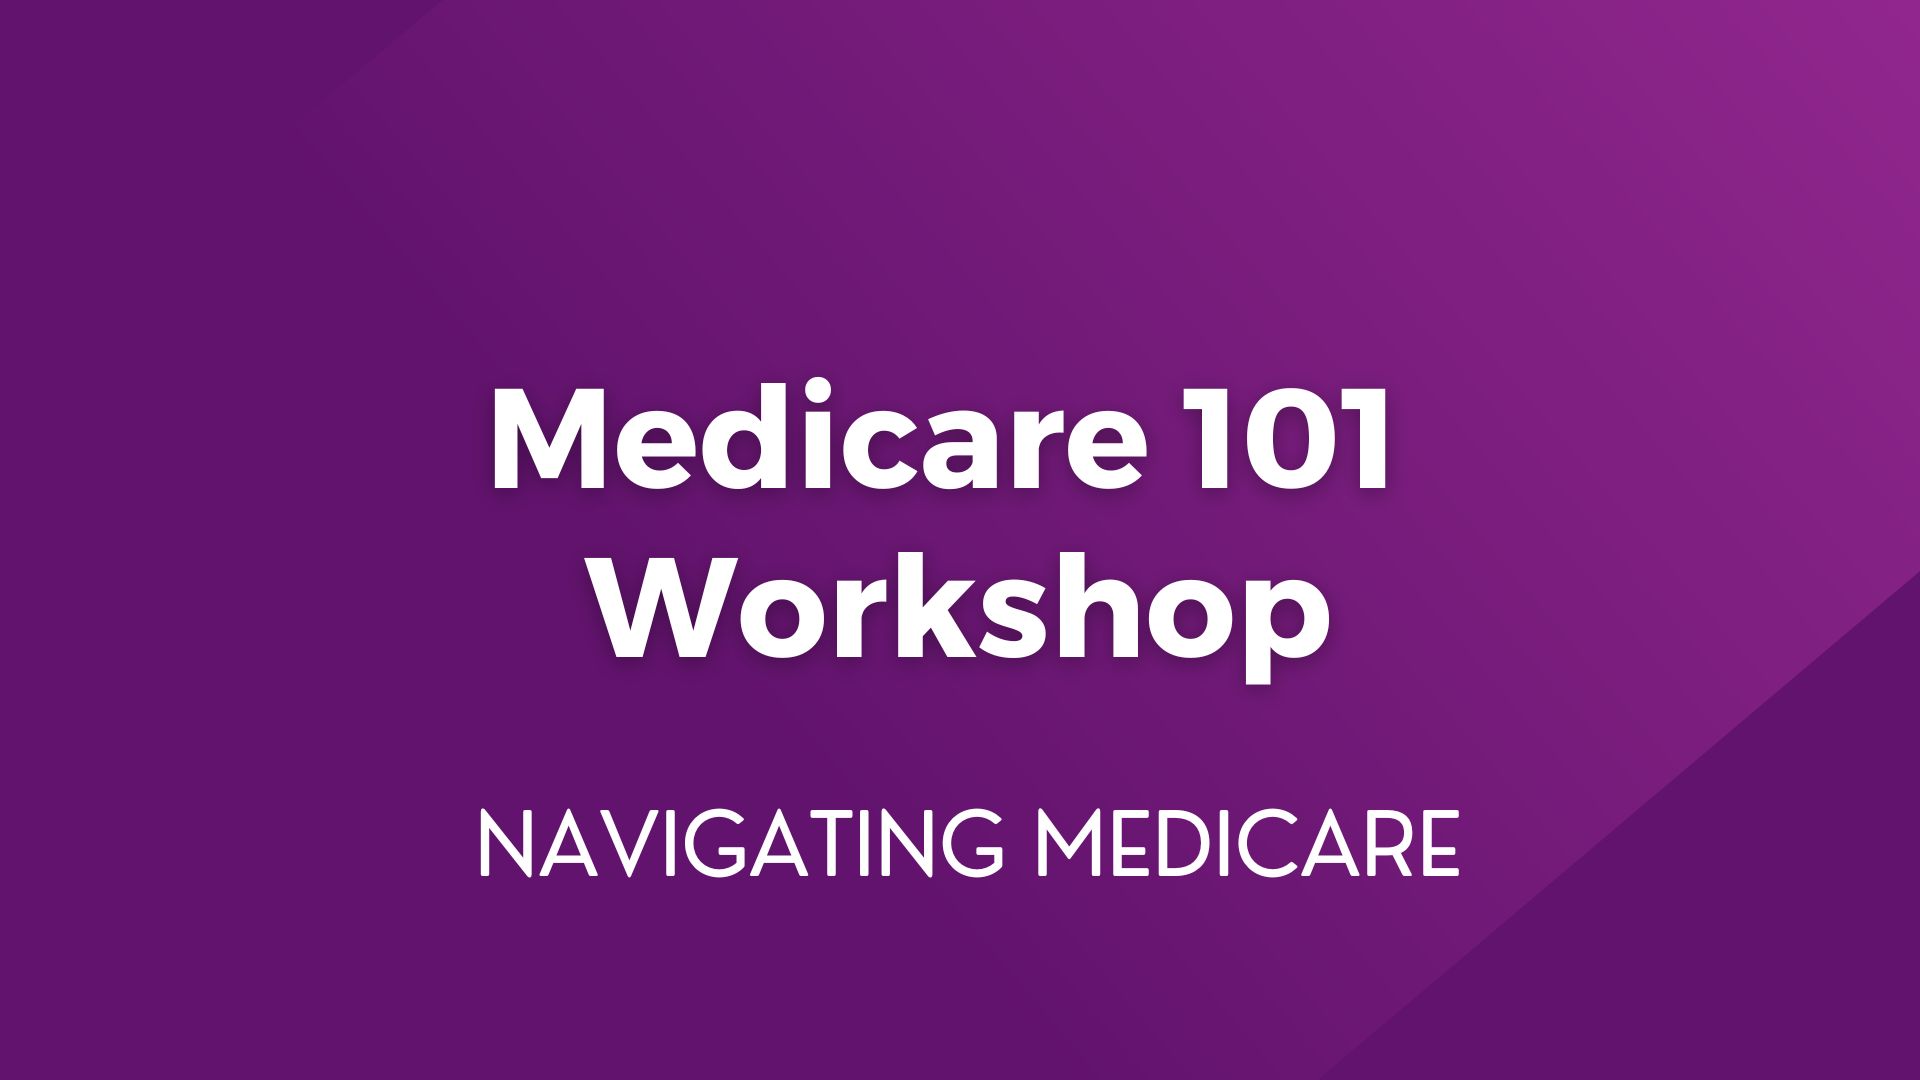 Medicare 101 Workshop – February 8